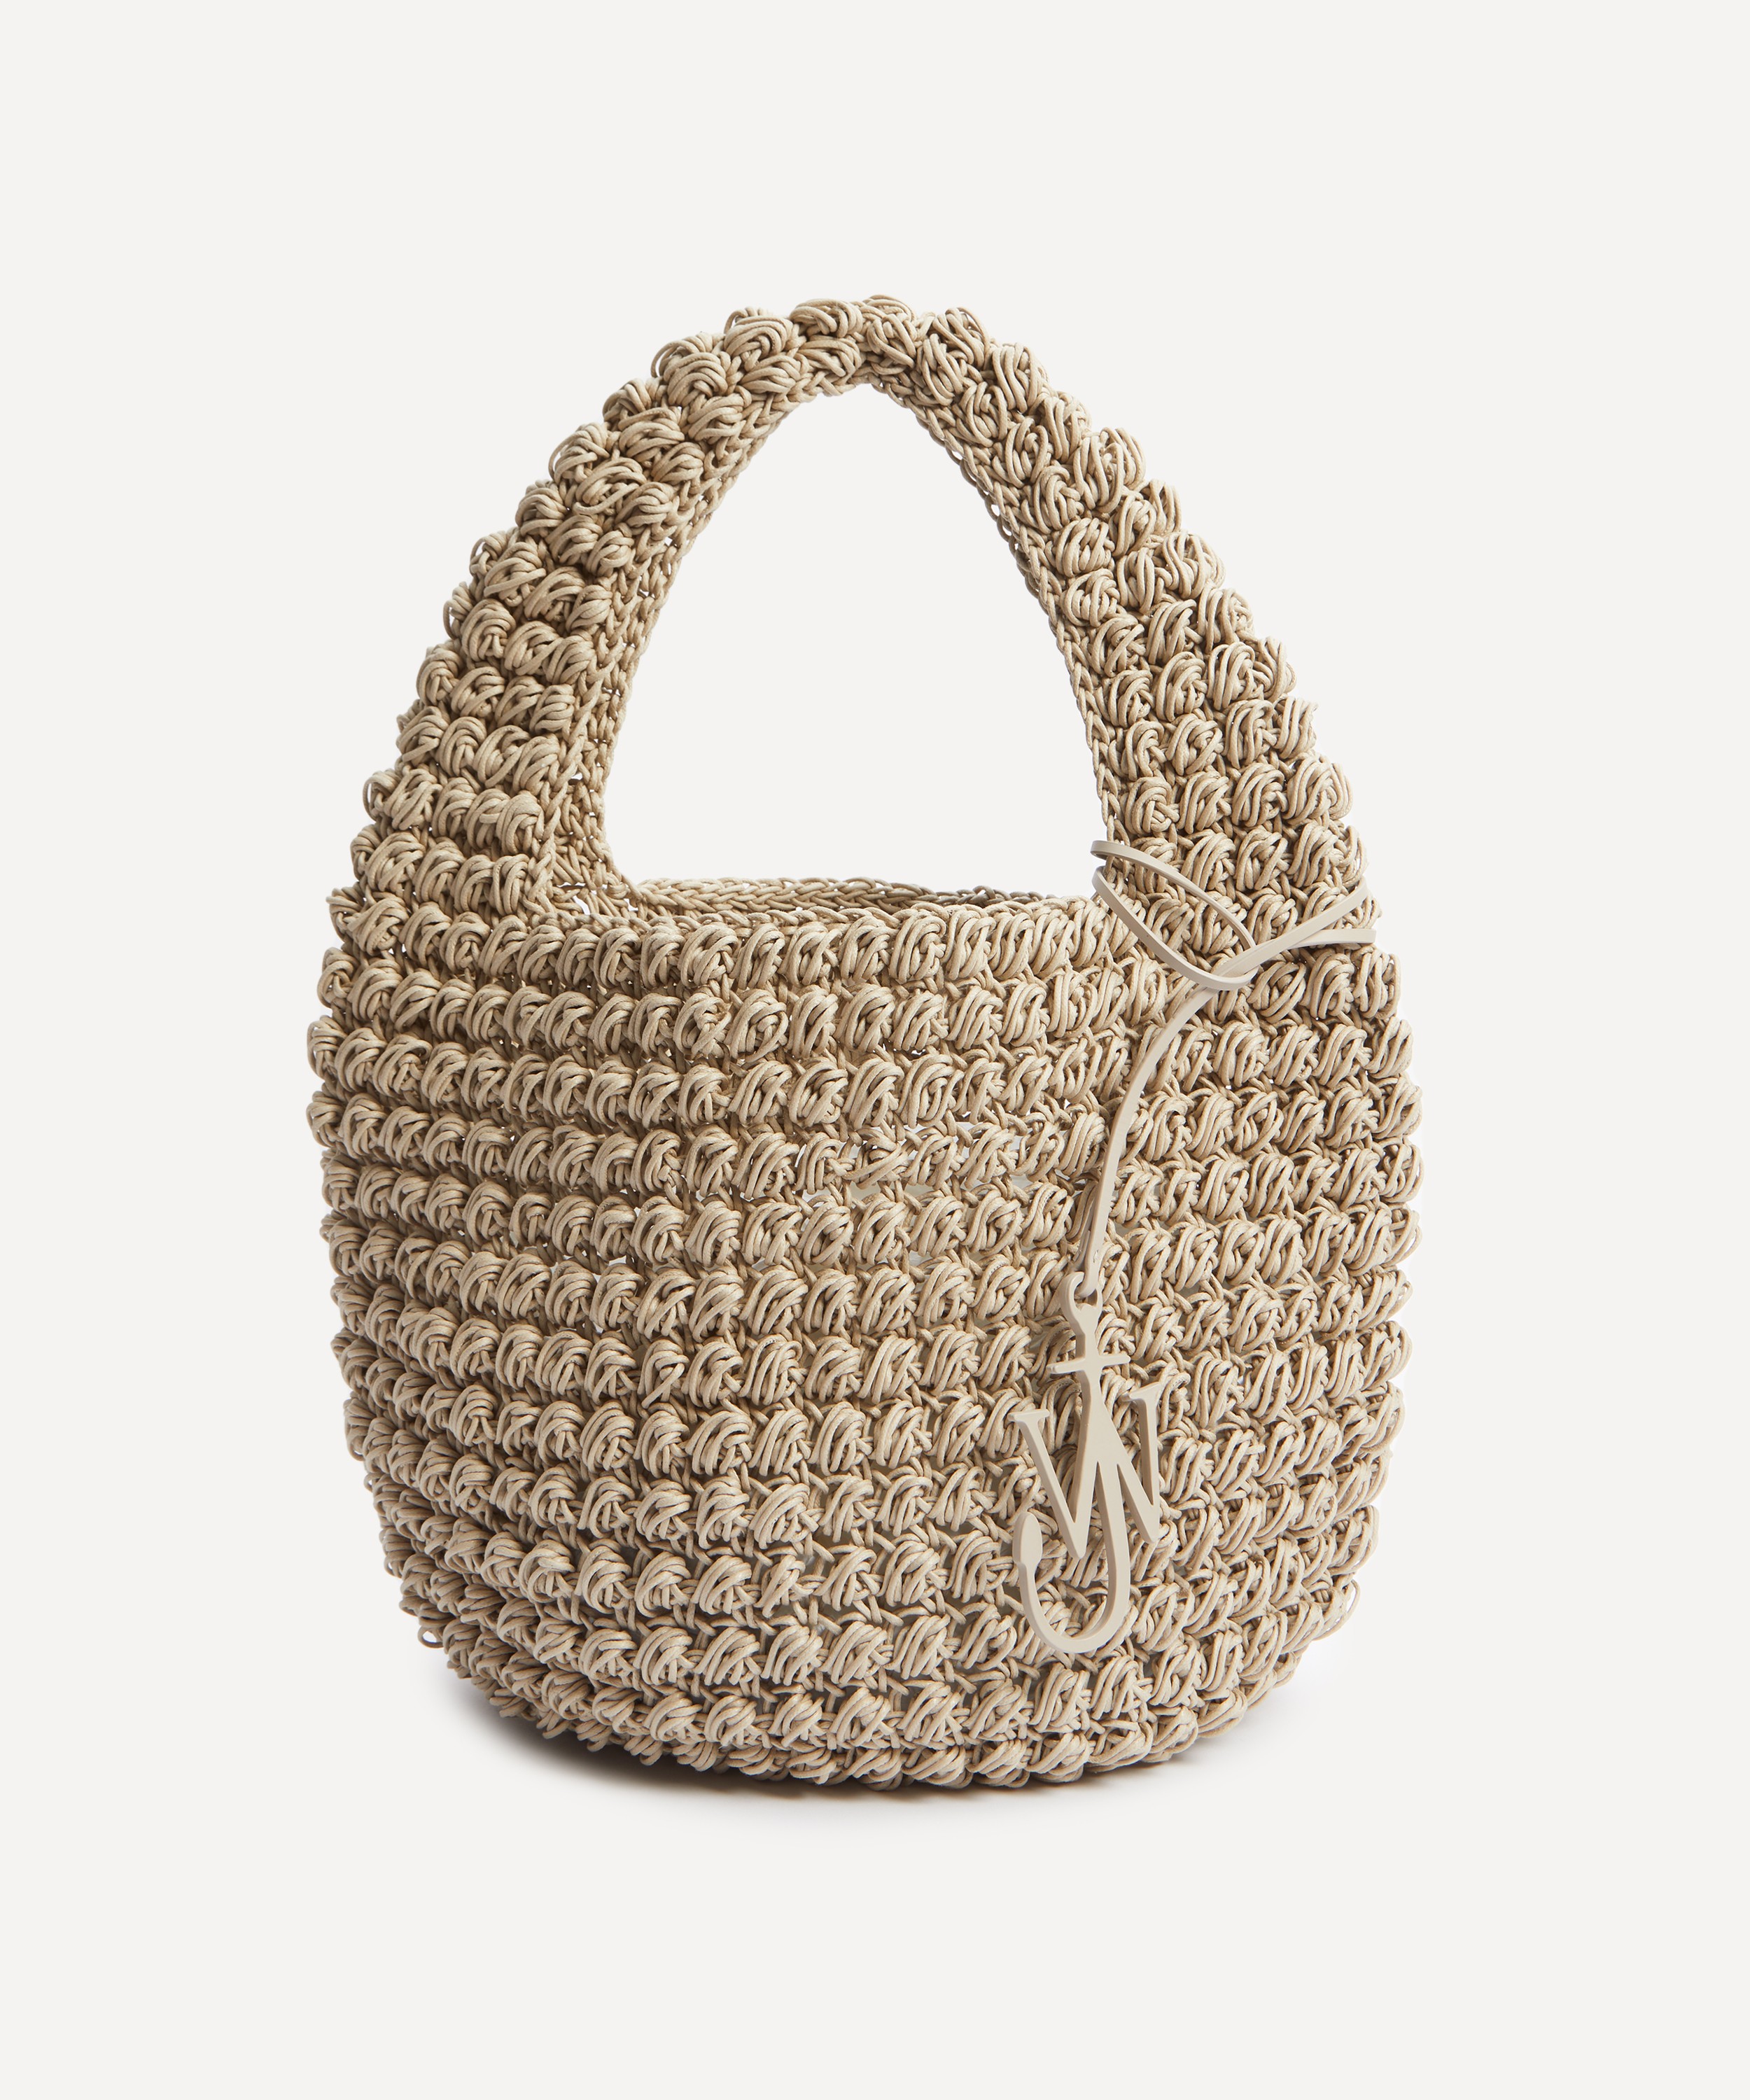 JW Anderson - Large Popcorn Basket Tote Bag